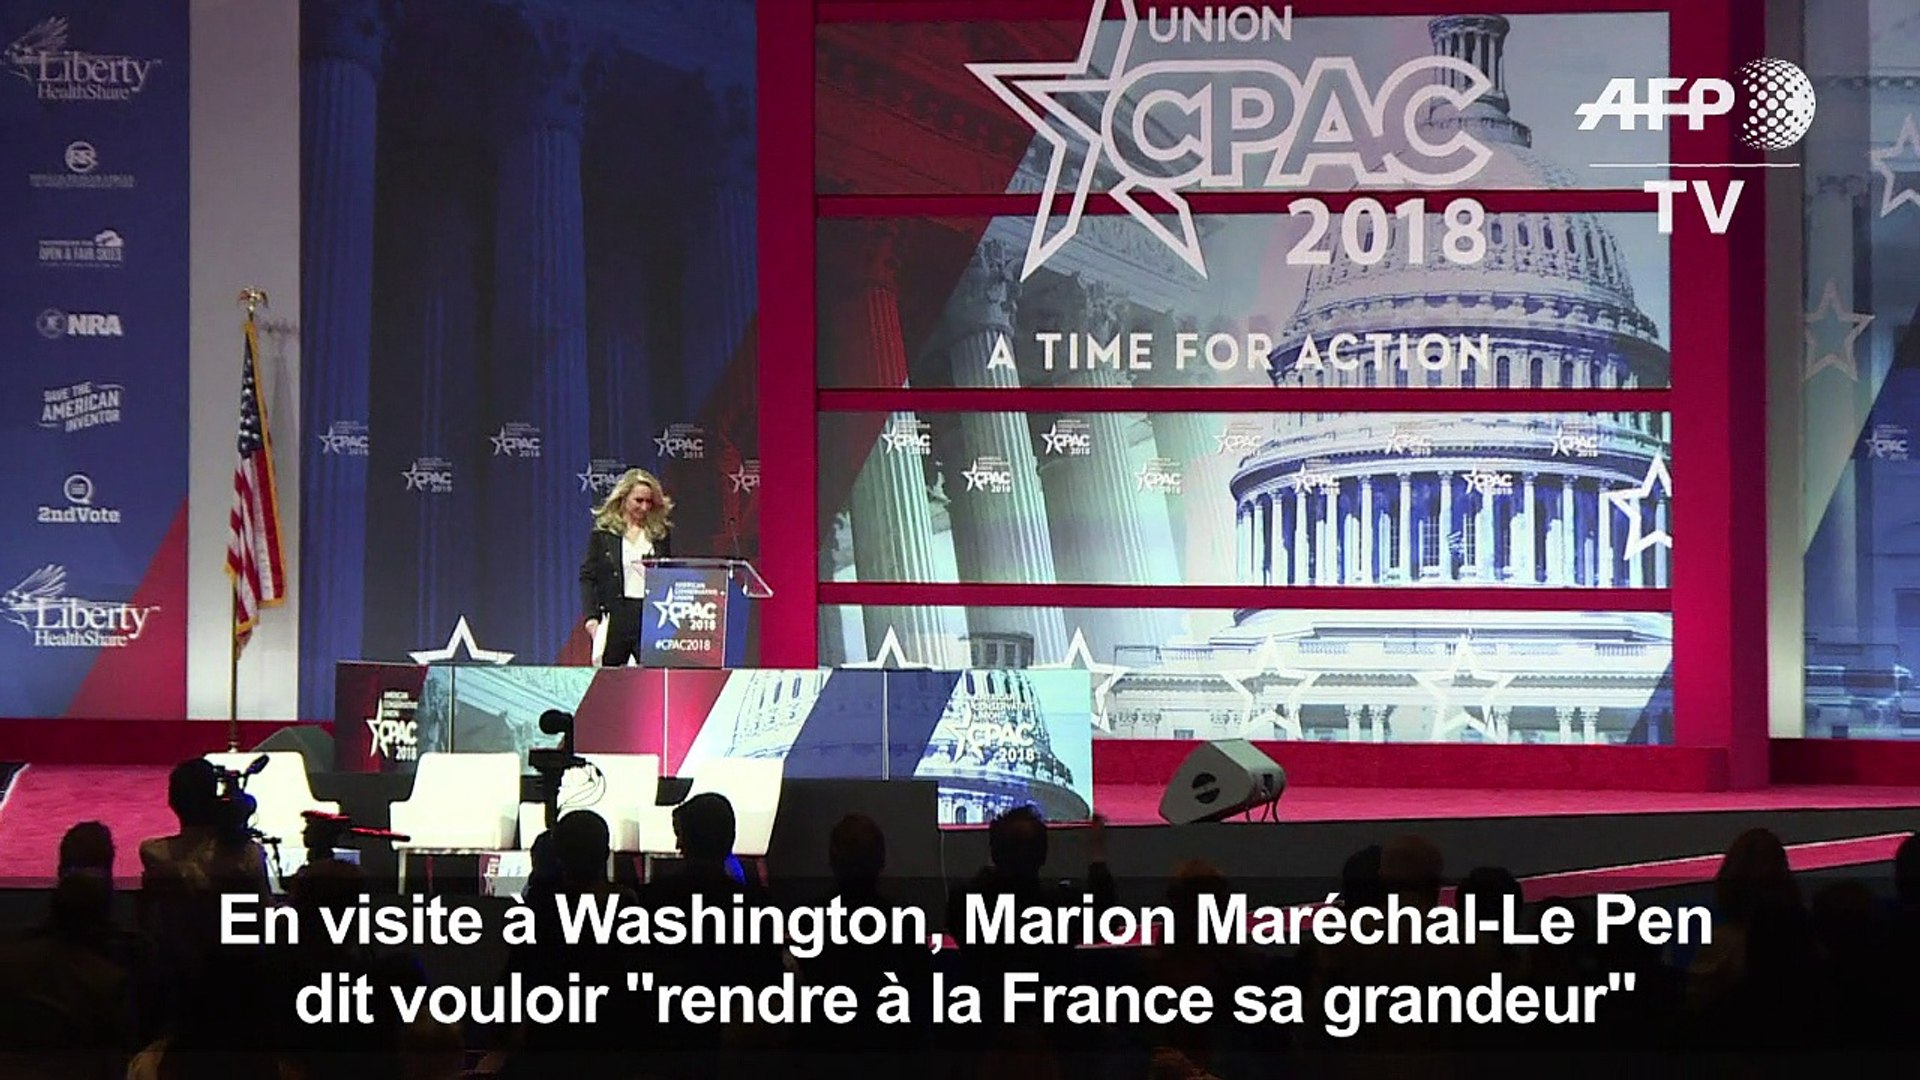 Marion Maréchal-Le Pen veut "rendre à la France sa grandeur" - Vidéo Dailymotion